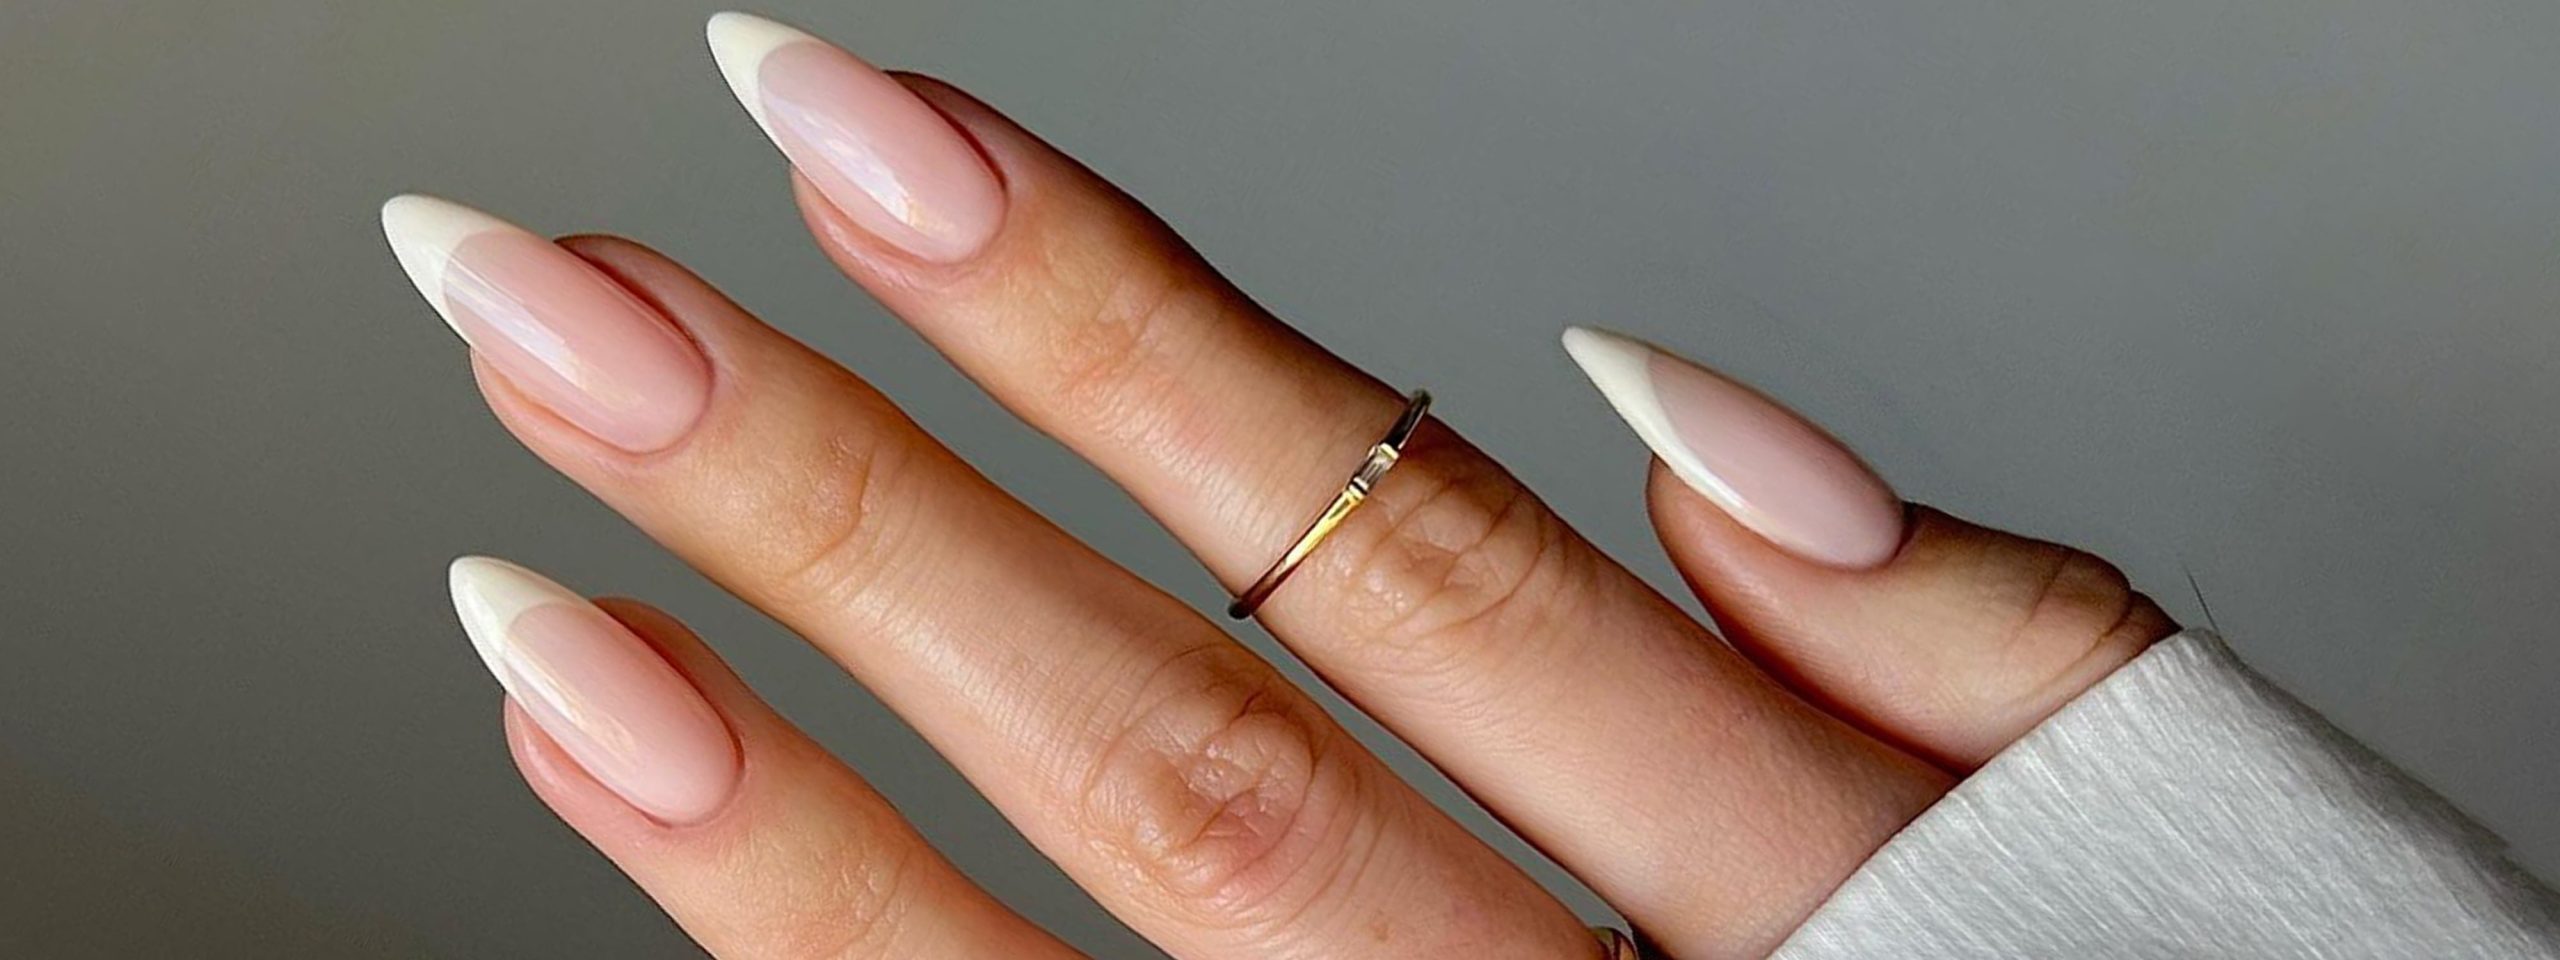 French nail thể hiện thanh lịch và cổ điển như quý bà người Pháp